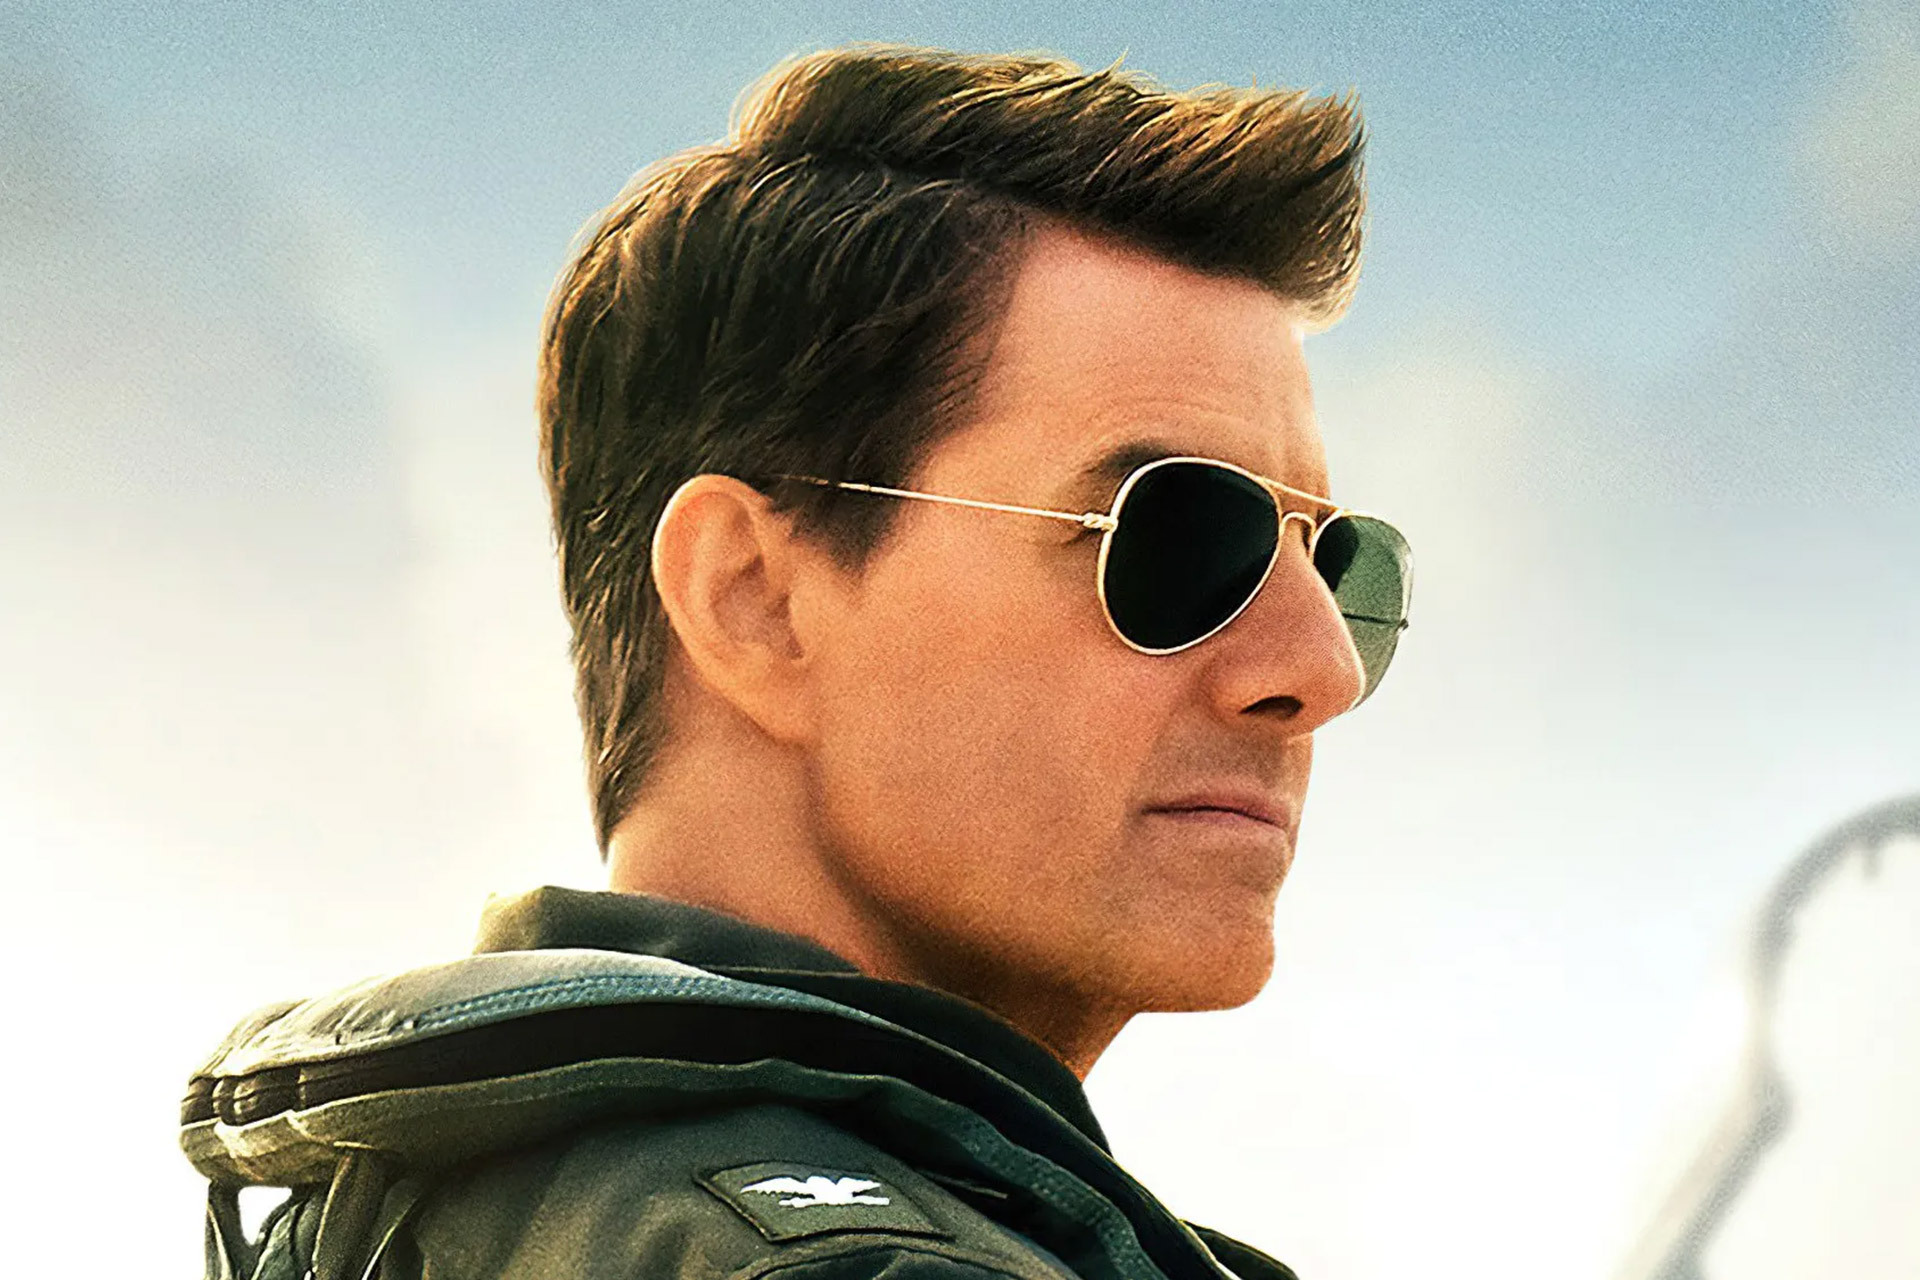 imagen 5 de Ray-Ban: Tom Cruise, Top Gun y las gafas de aviador.